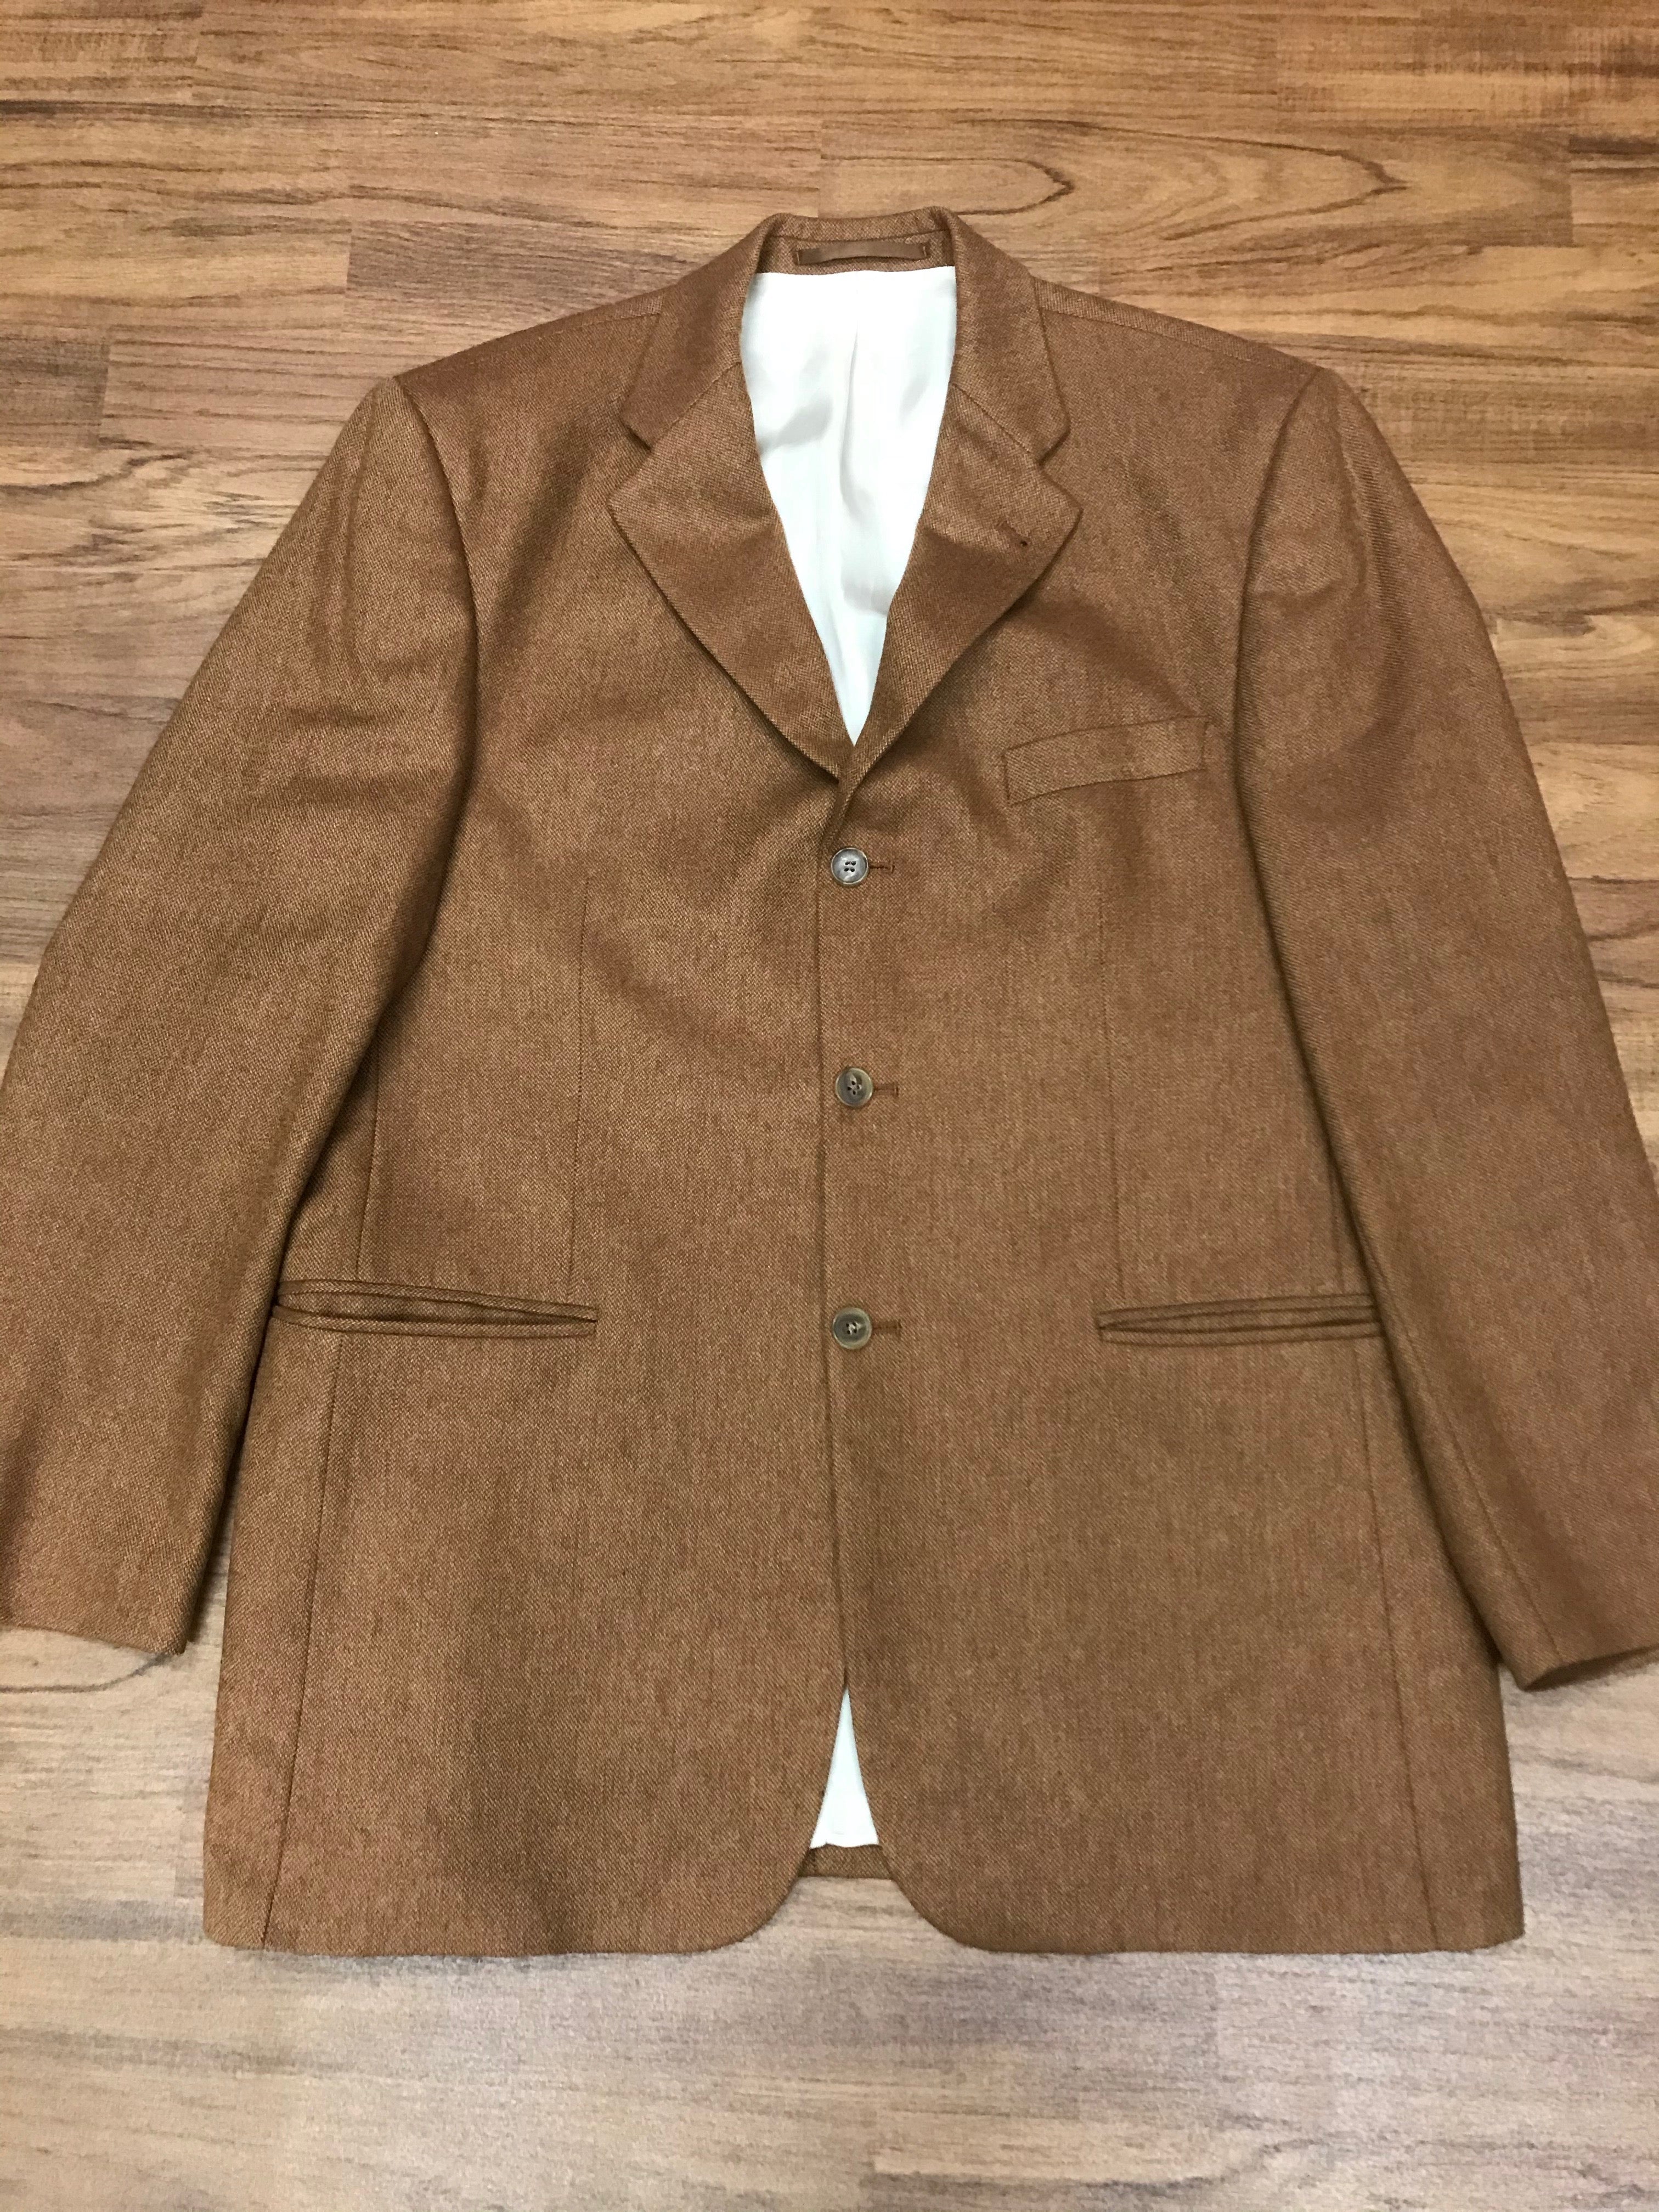 Braune, hochwertige, Second Hand Jacke für Herren Gr.52 aus Cashmere